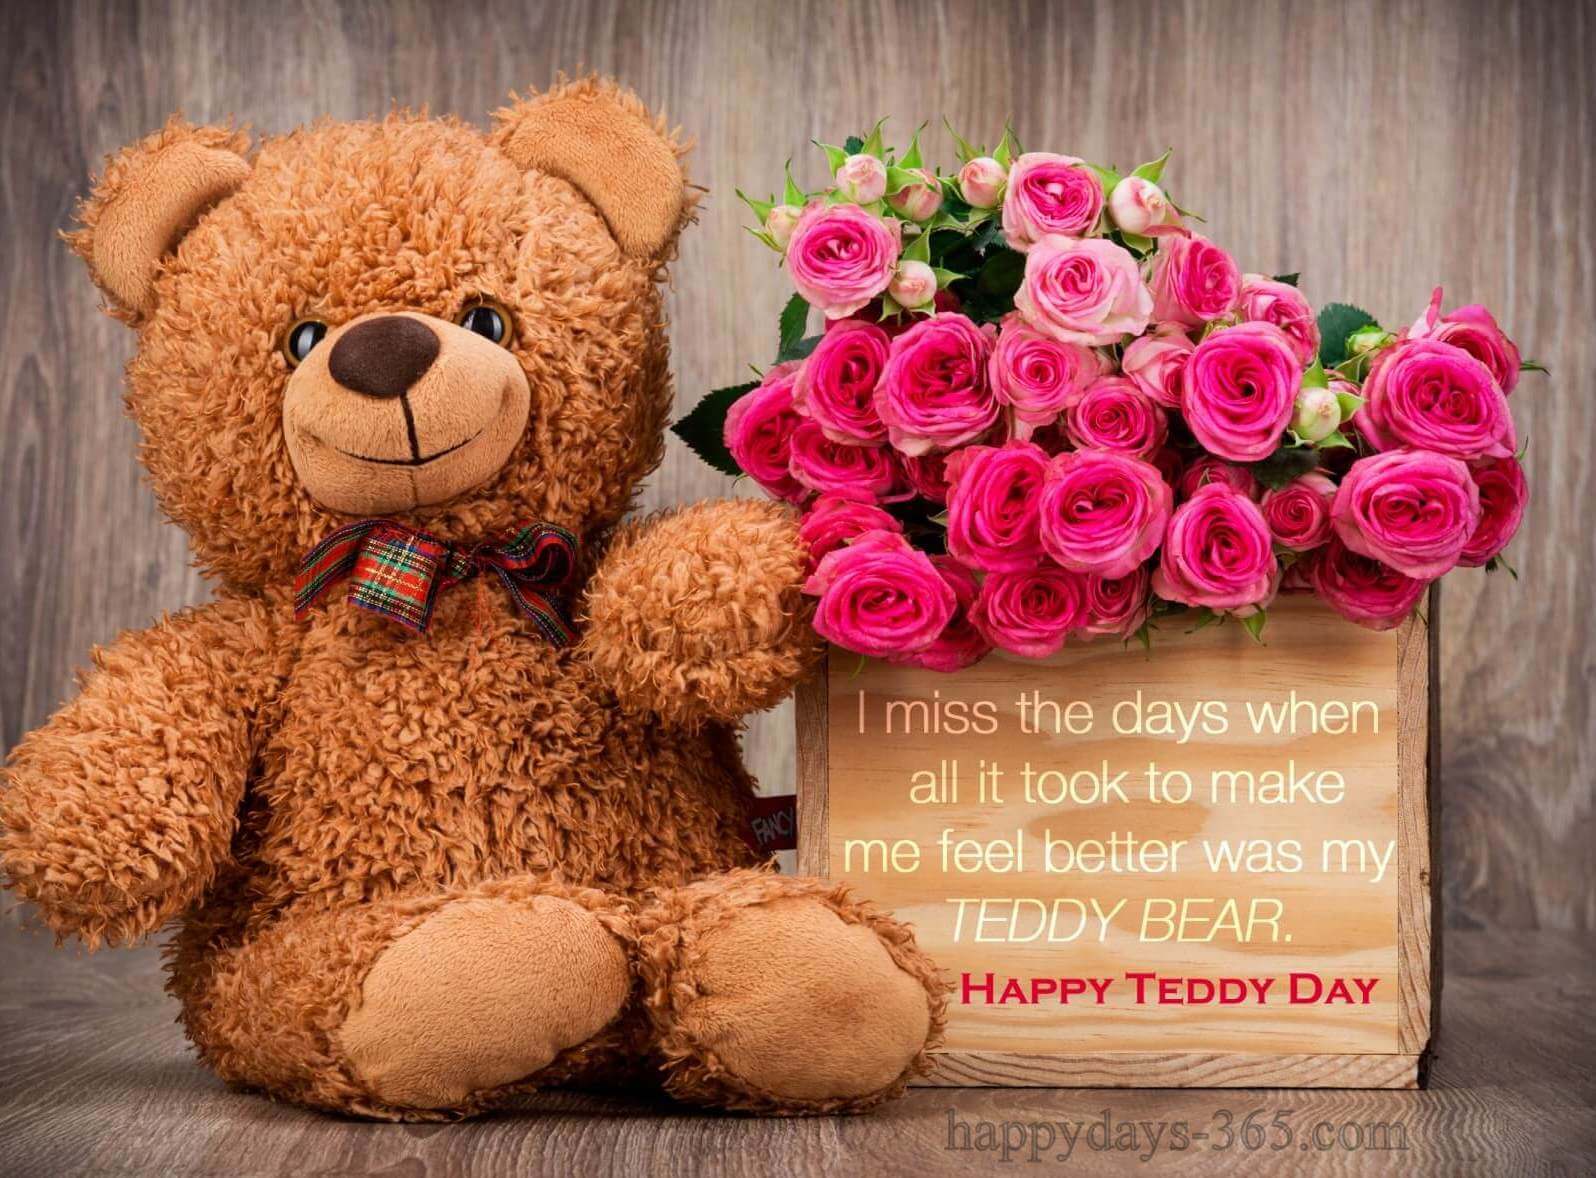 Happy Teddy Day 2021. Happy Days 365